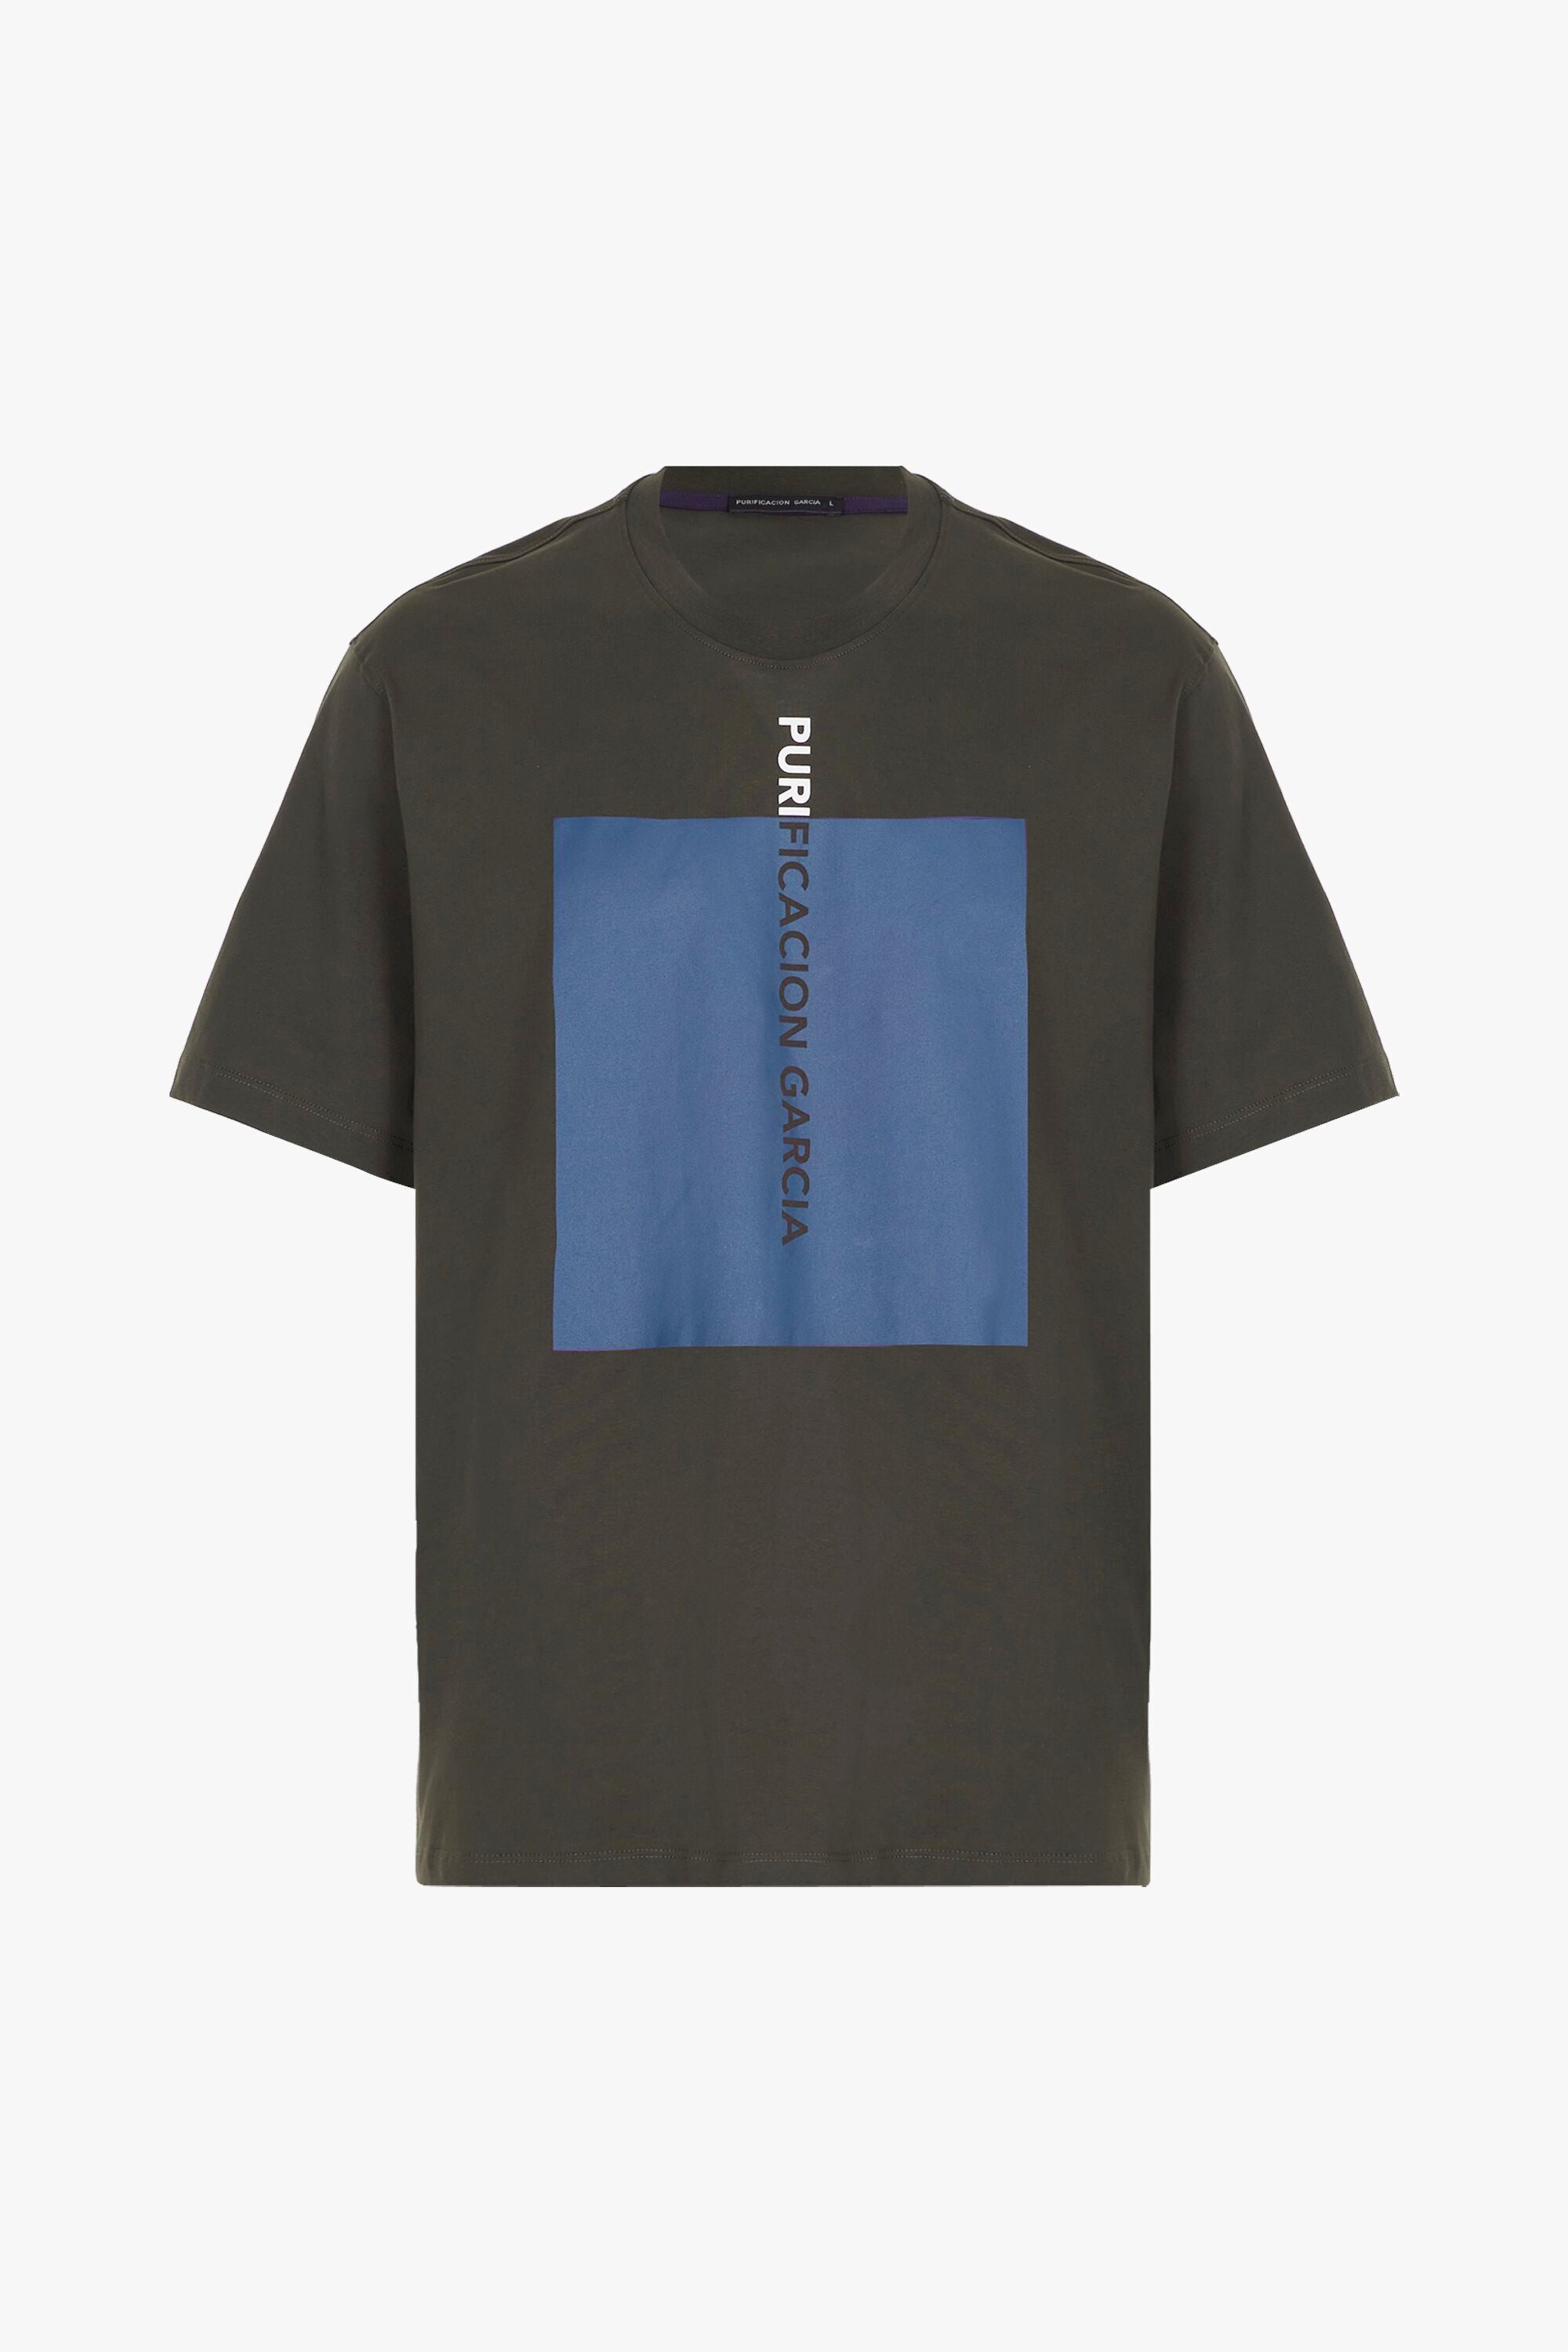 - Denmark Cube t-shirt Purificacion printed brown Garcia